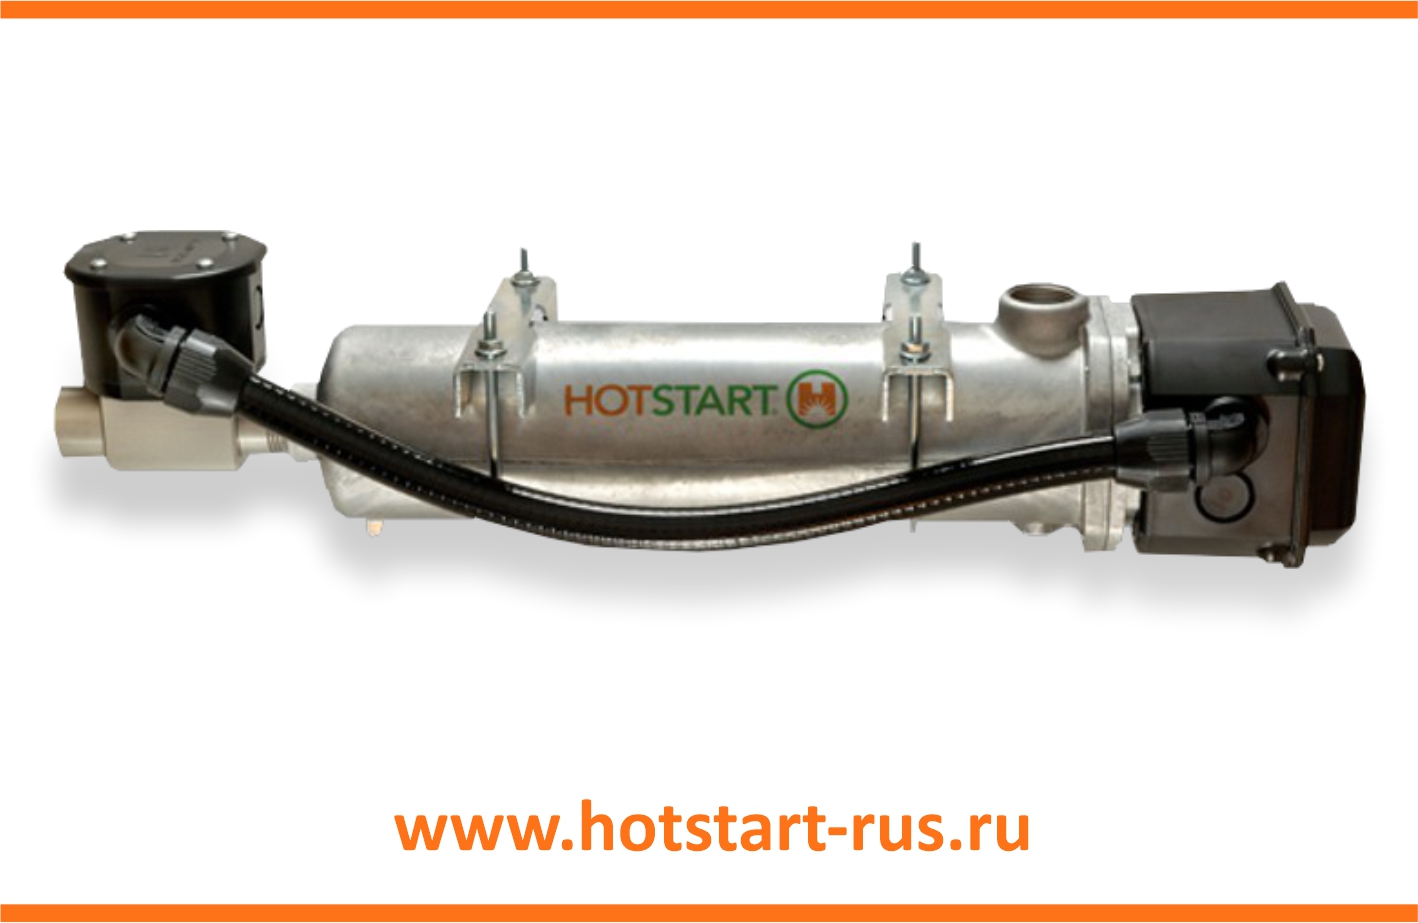 Предпусковой подогреватель двигателя Hotstart 5,0 кВт CL 1502ХХ-200